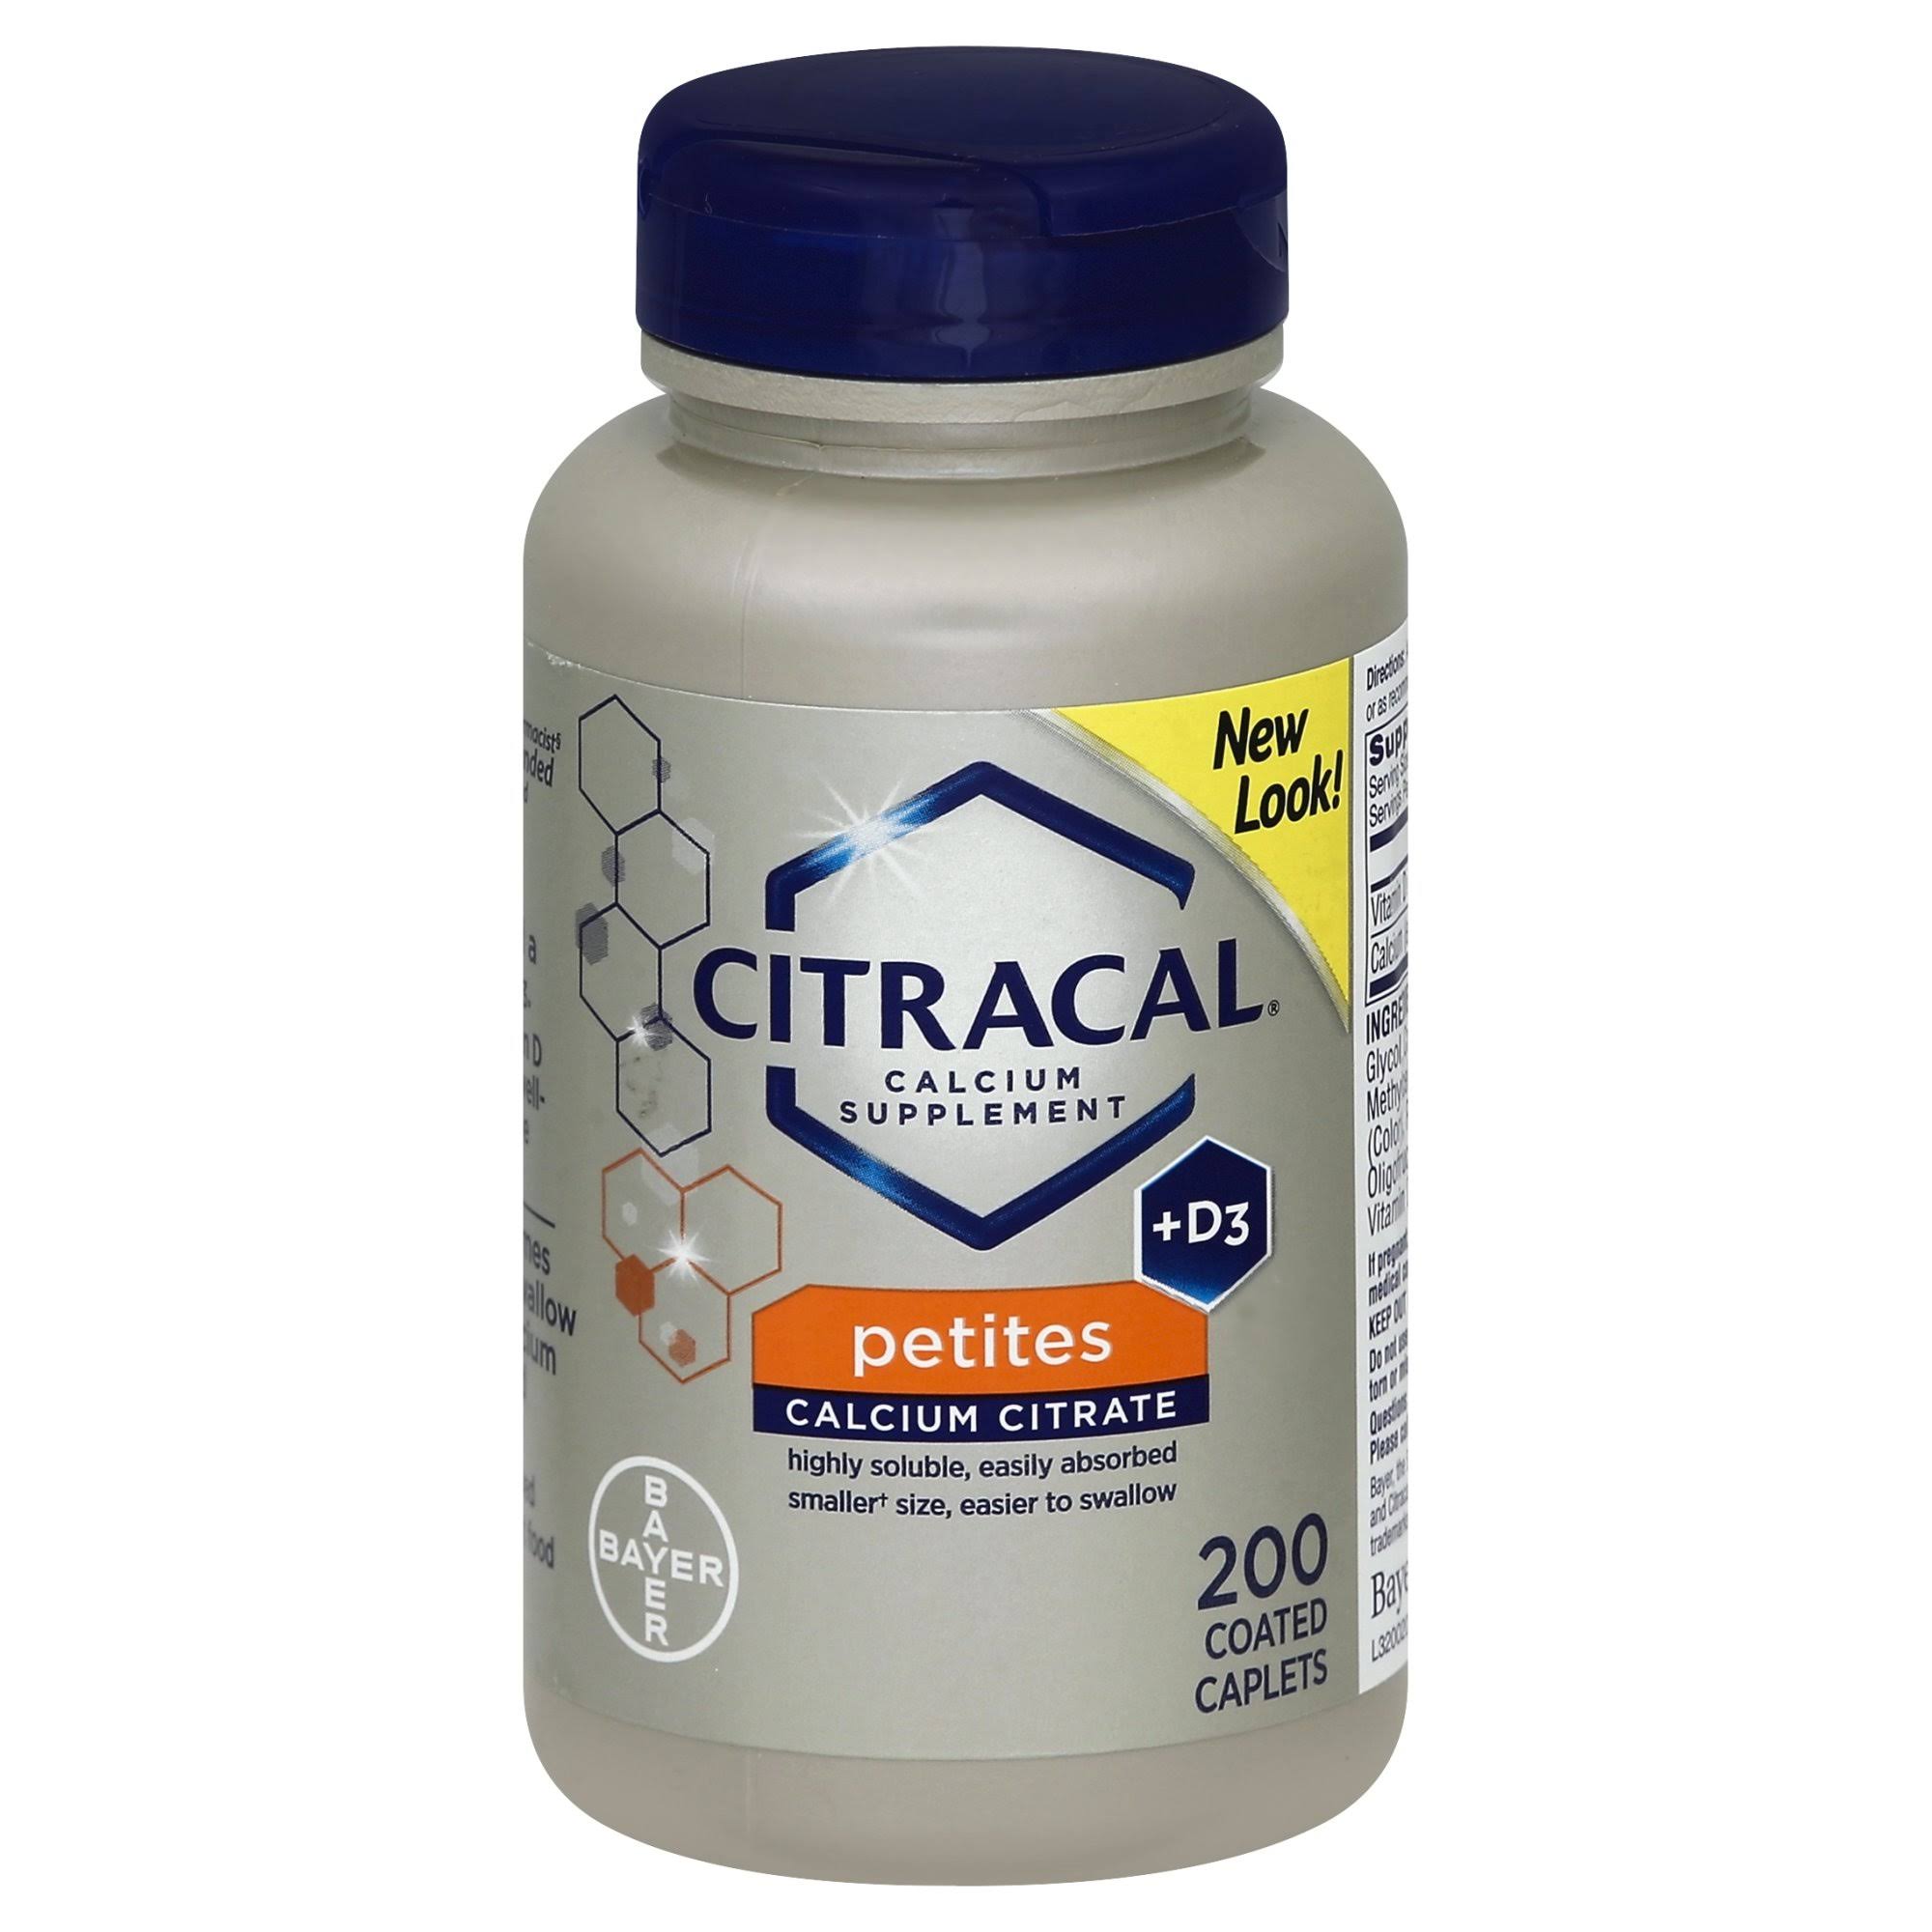 Citracal Plus D3 Petites Calcium Supplement - 200ct